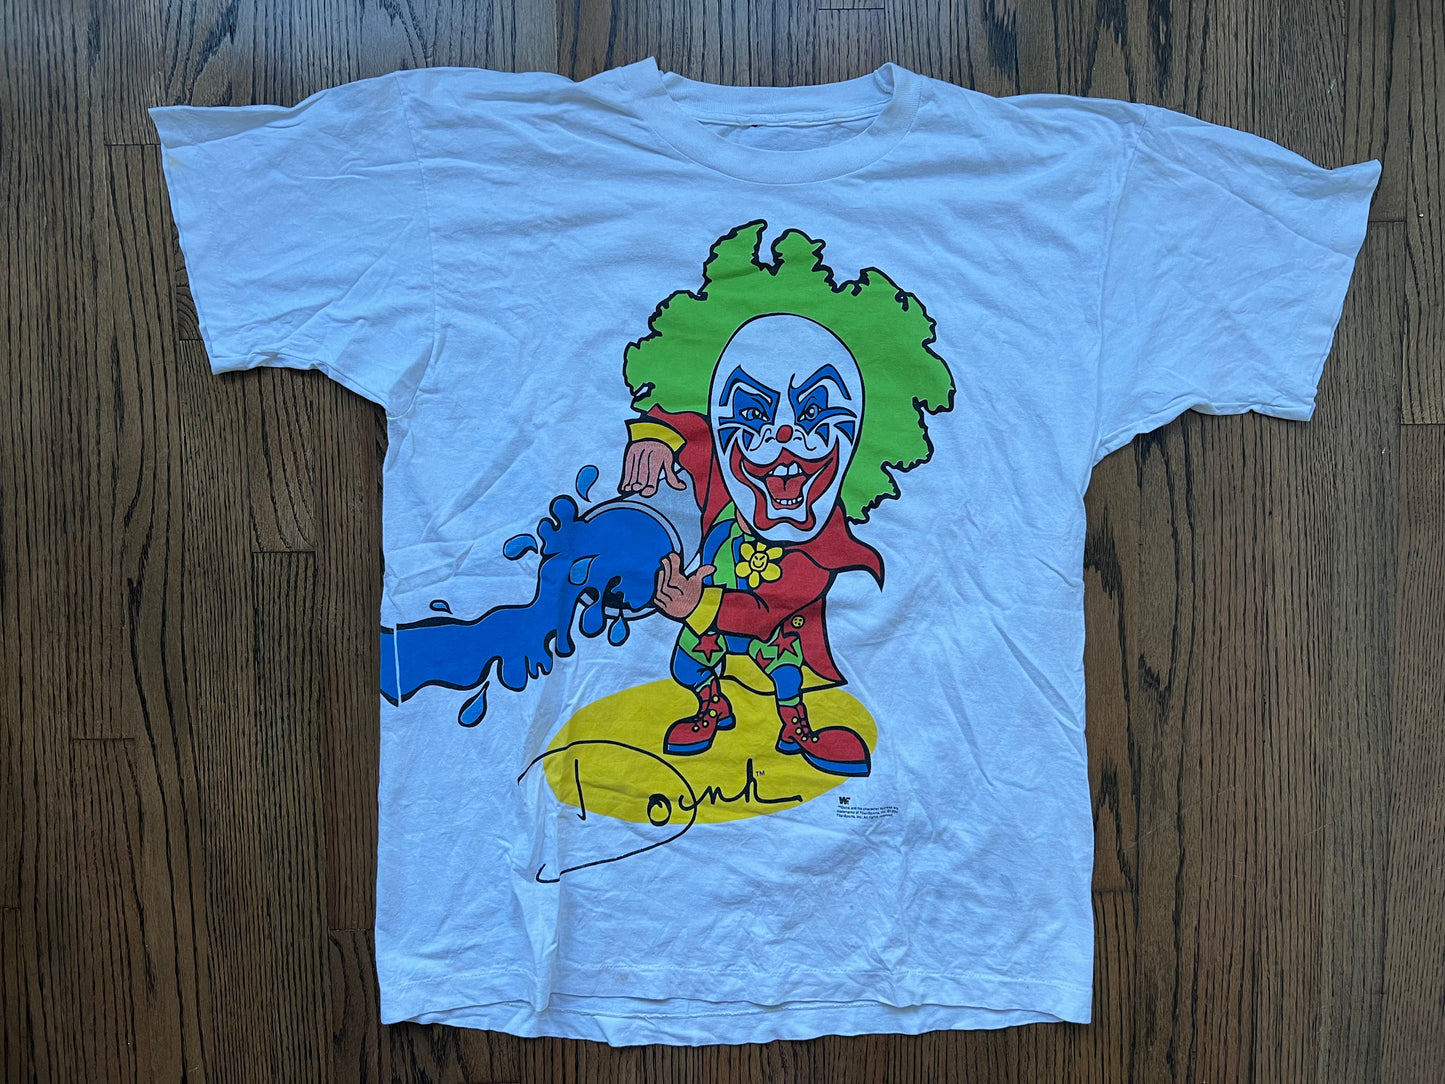 1993 WWF Doink The Clown shirt